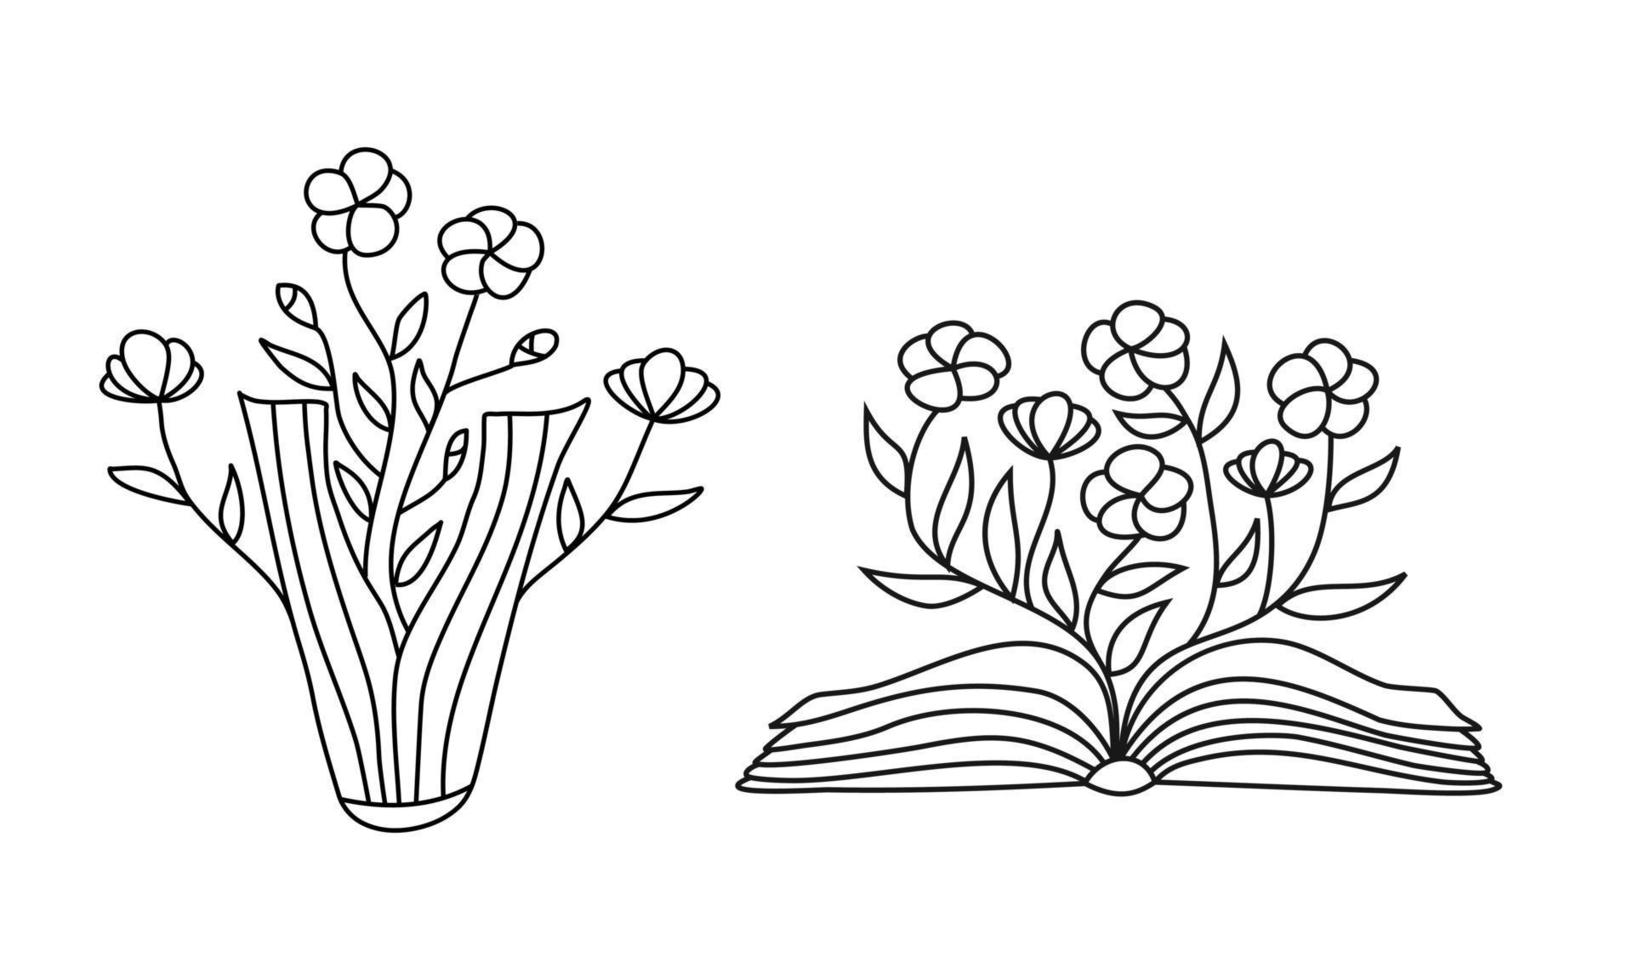 open boek met bloemen takjes. conceptuele illustratie van schrijf je eigen toekomst. vector concept voor boekhandel, literatuurclub of bibliotheek. schets illustratie